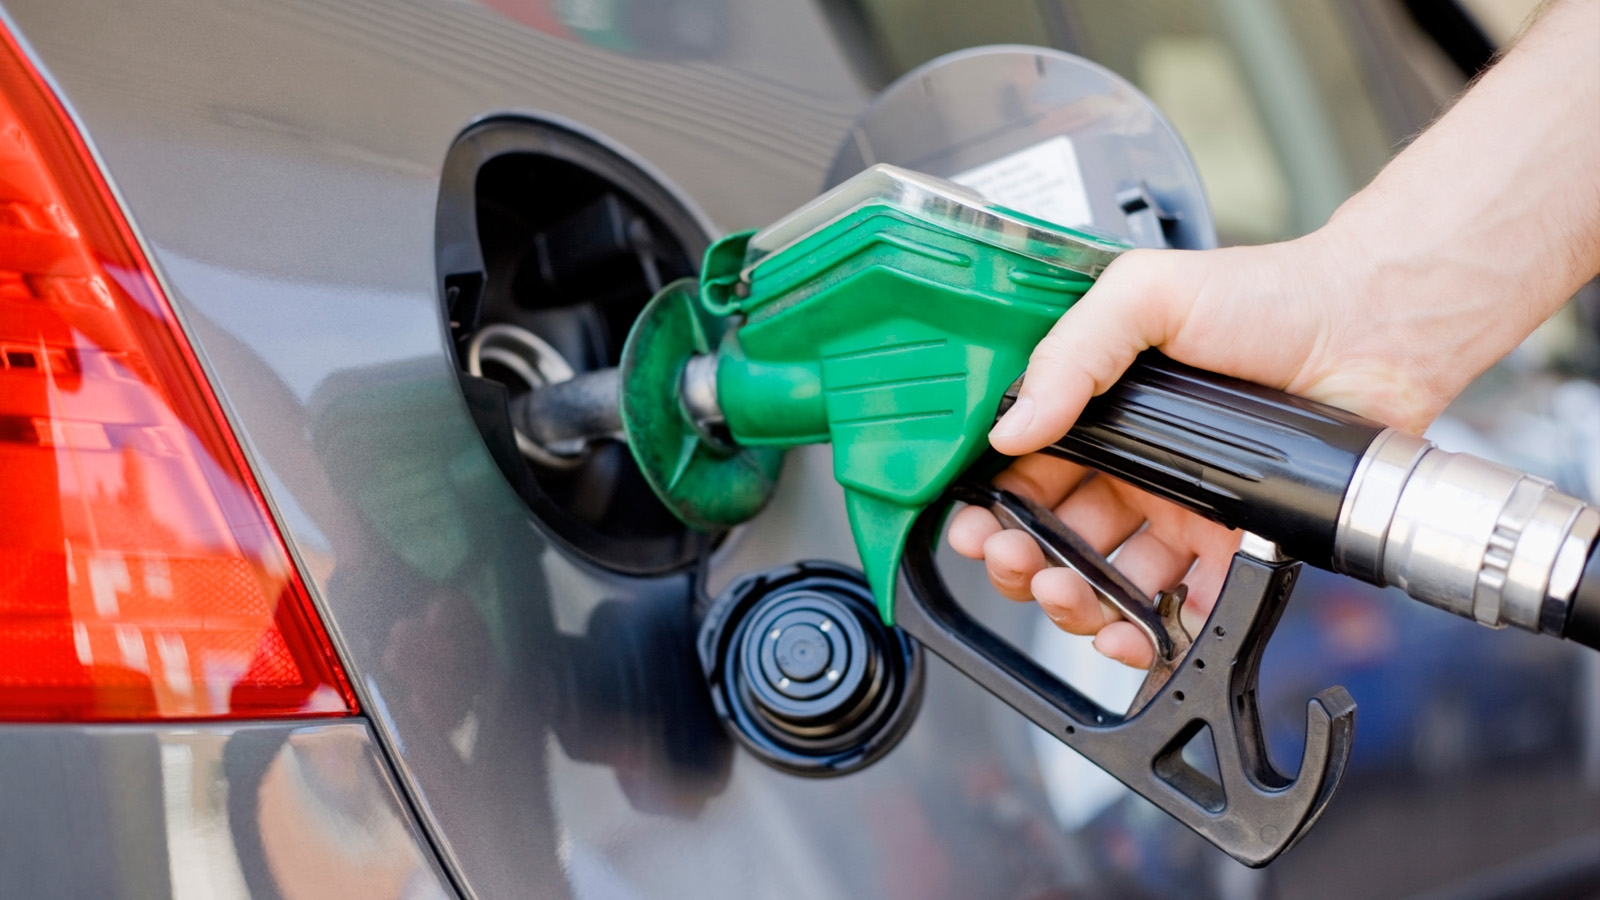 Analisi approfondita delle variazioni settimanali nel costo dei carburanti